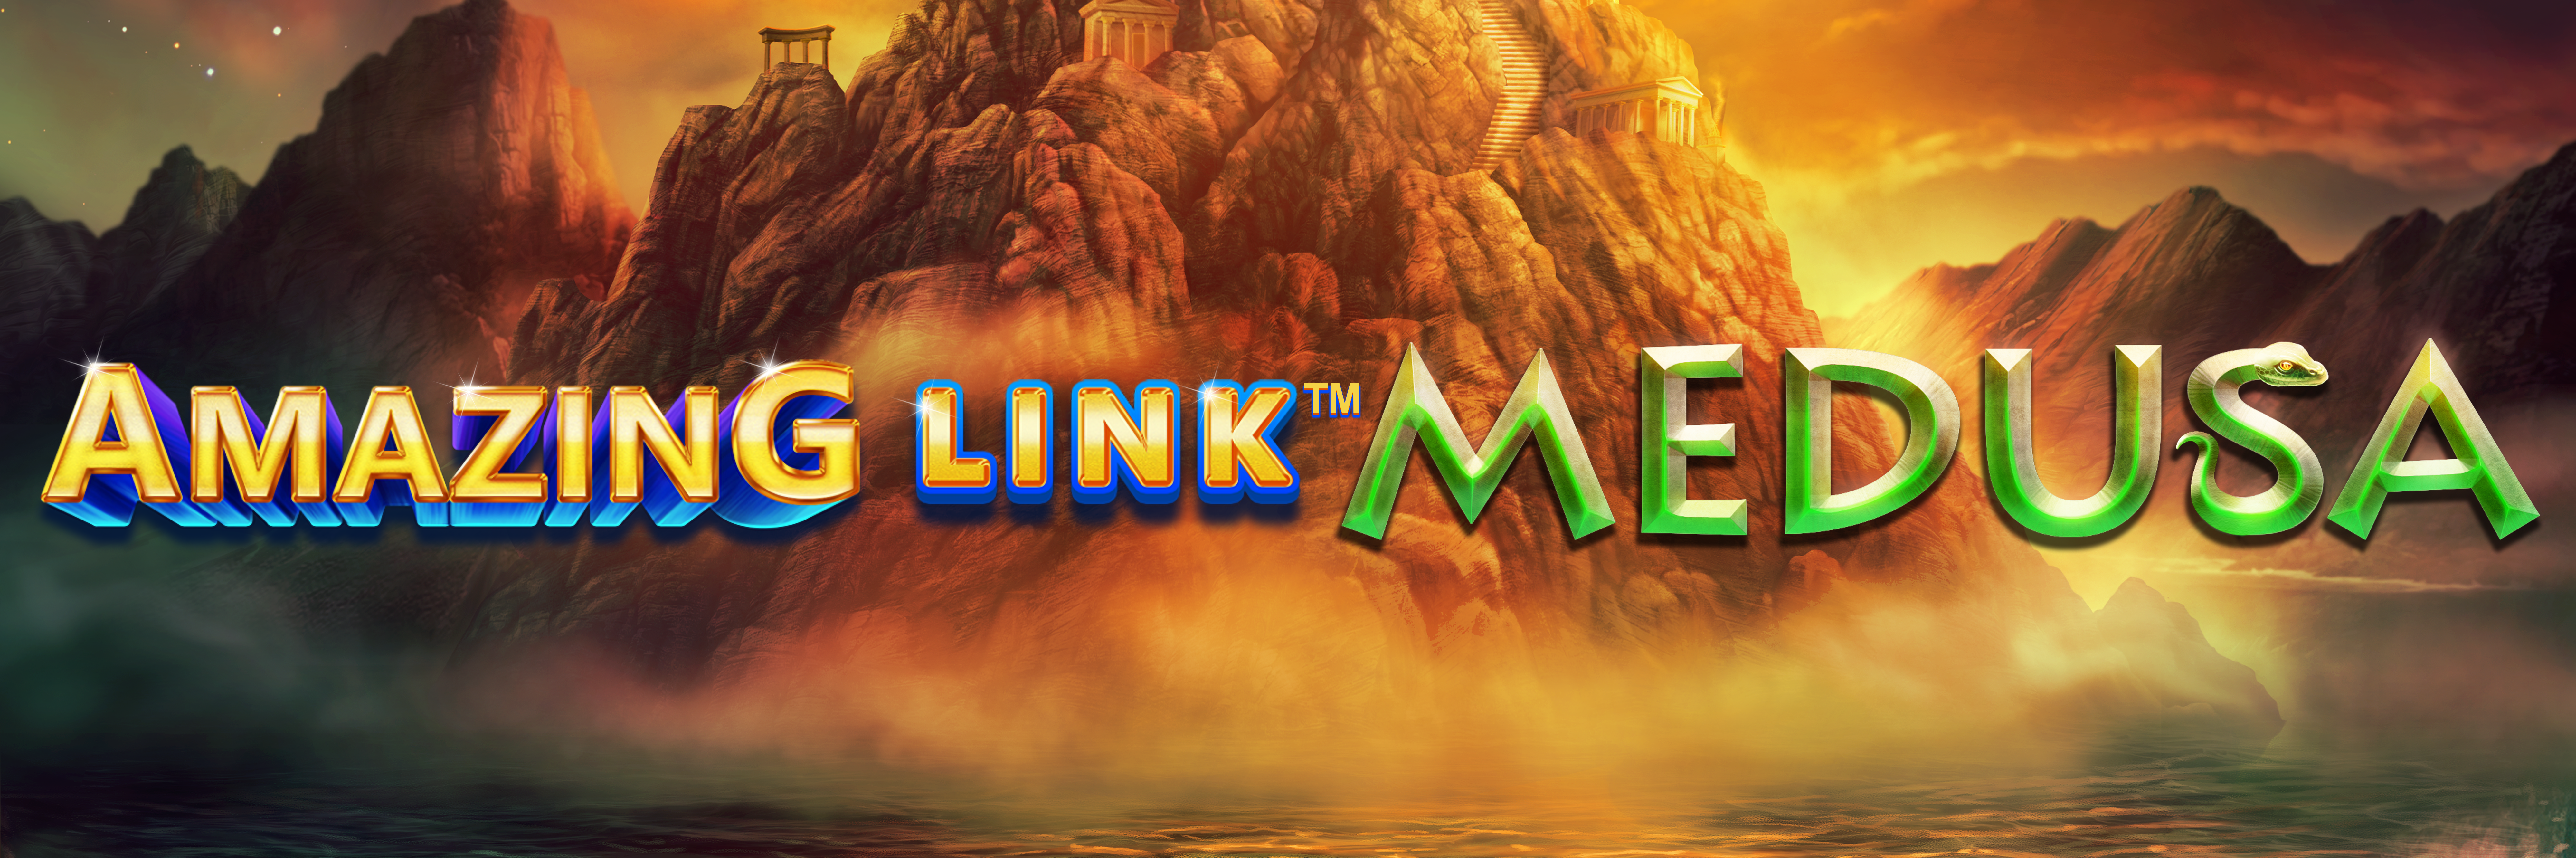 Amazing Link Medusa Slot logo